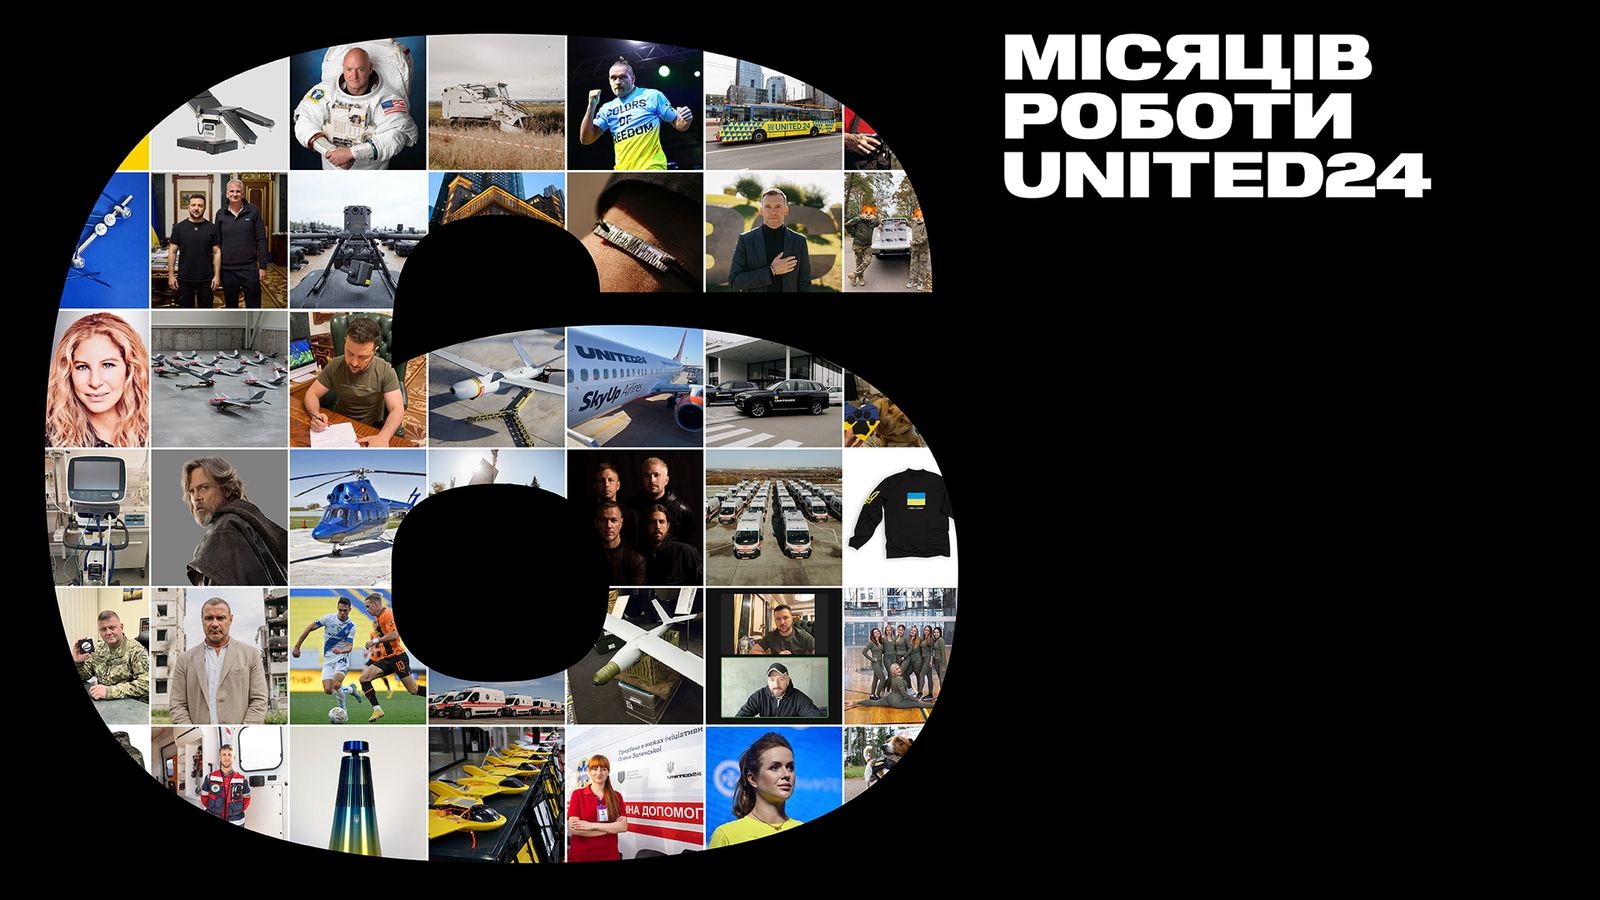 UNITED24 звітує за 6 місяців роботи: понад 217 мільйонів доларів внесків, десять зіркових амбасадорів, десятки партнерств, гелікоптер, реанімобілі, дрони та найбільший засіб для розмінування 